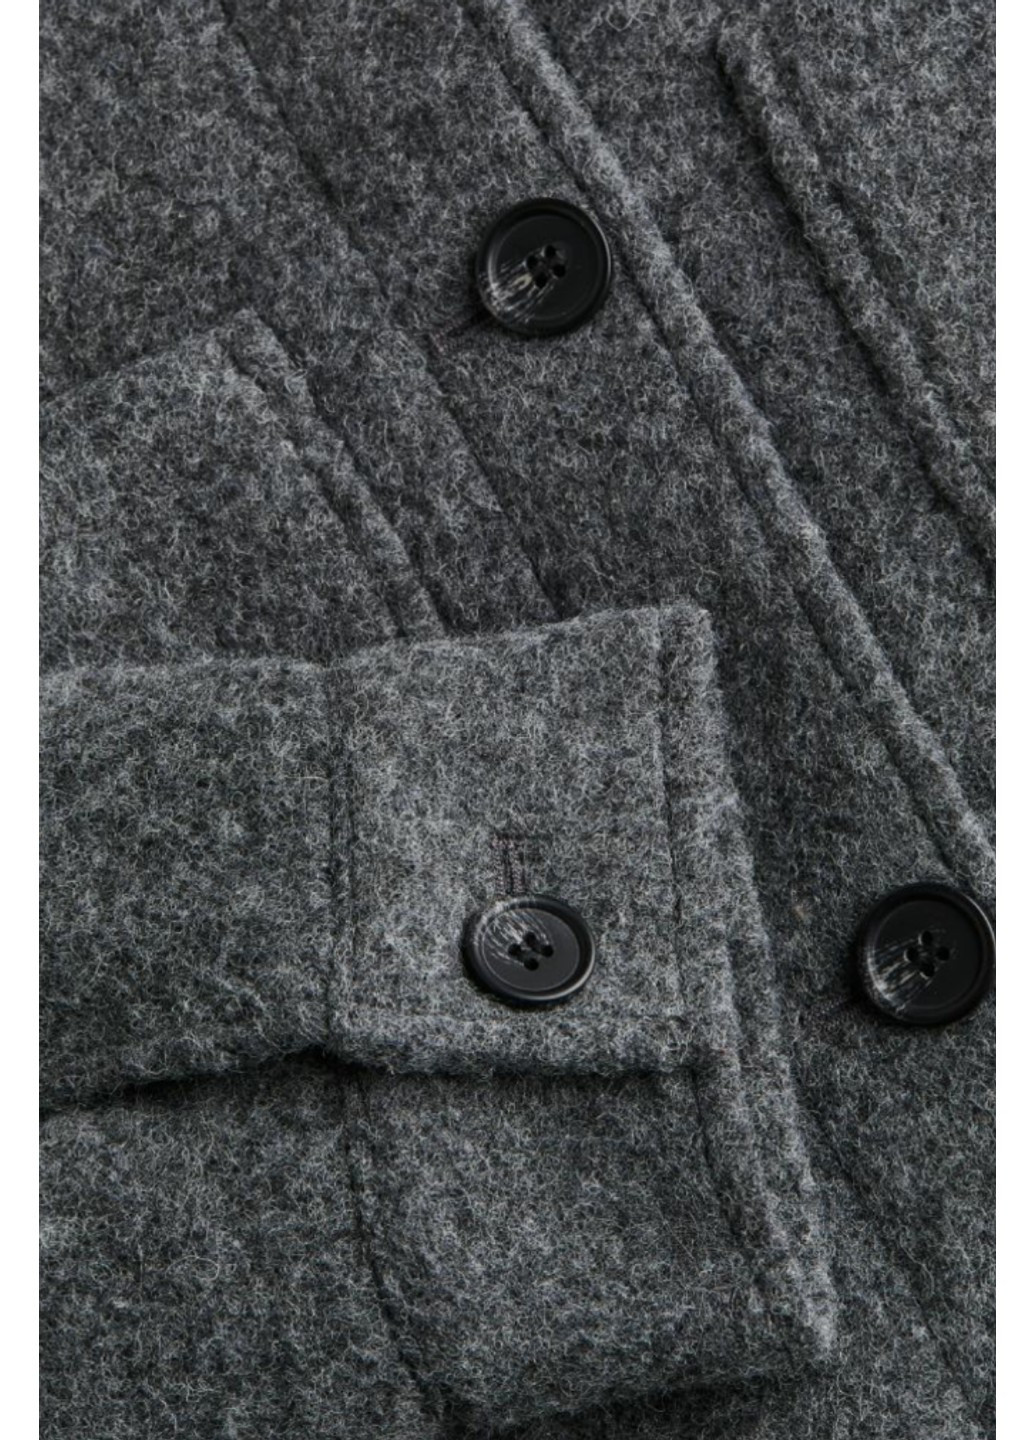 Темно-серая демисезонная женская куртка из шерстяной смеси н&м (56226) xs темно-серая H&M